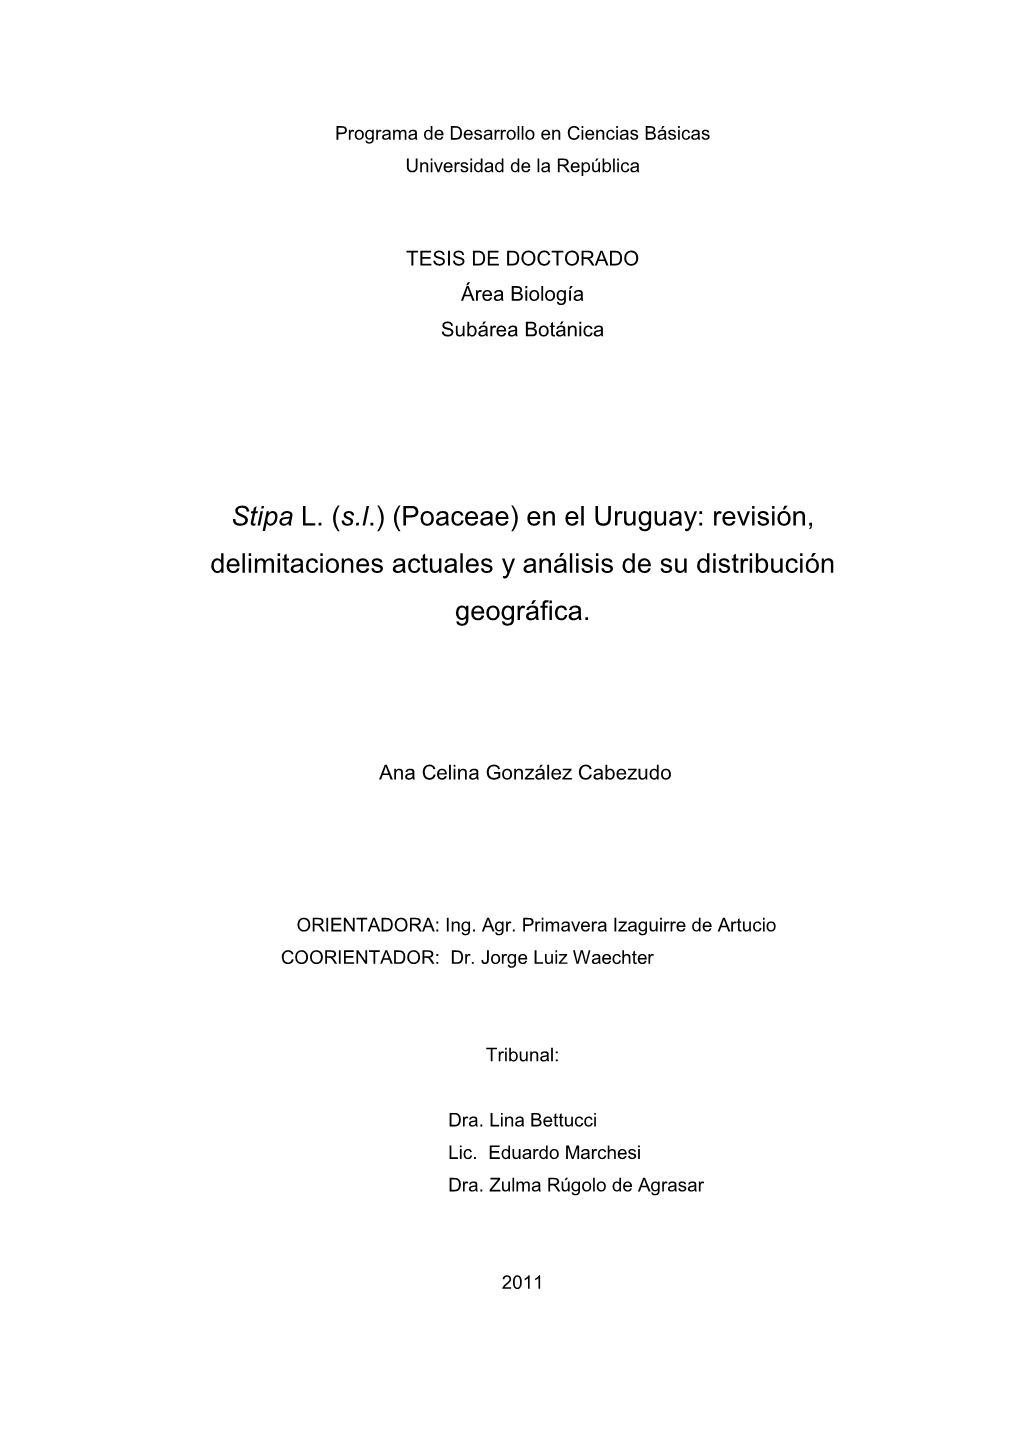 (Poaceae) En El Uruguay: Revisión, Delimitaciones Actuales Y Análisis De Su Distribución Geográfica